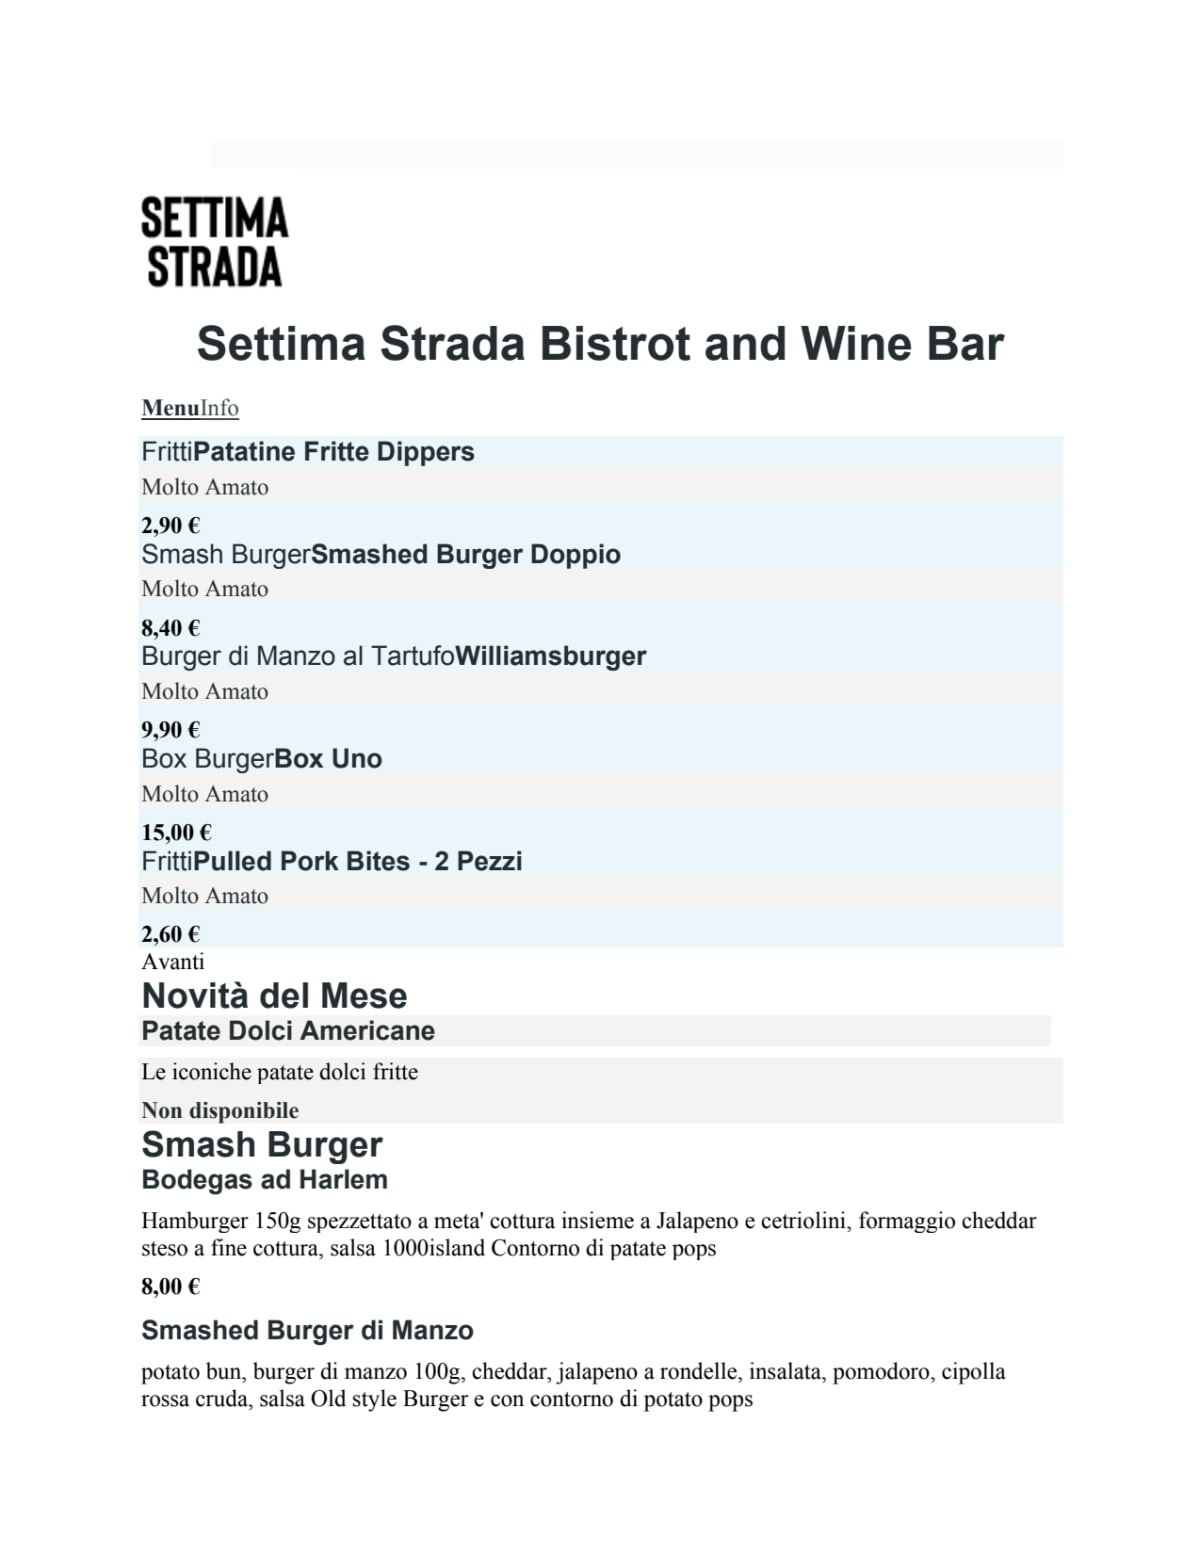 Settima Strada - Wine Bar menu